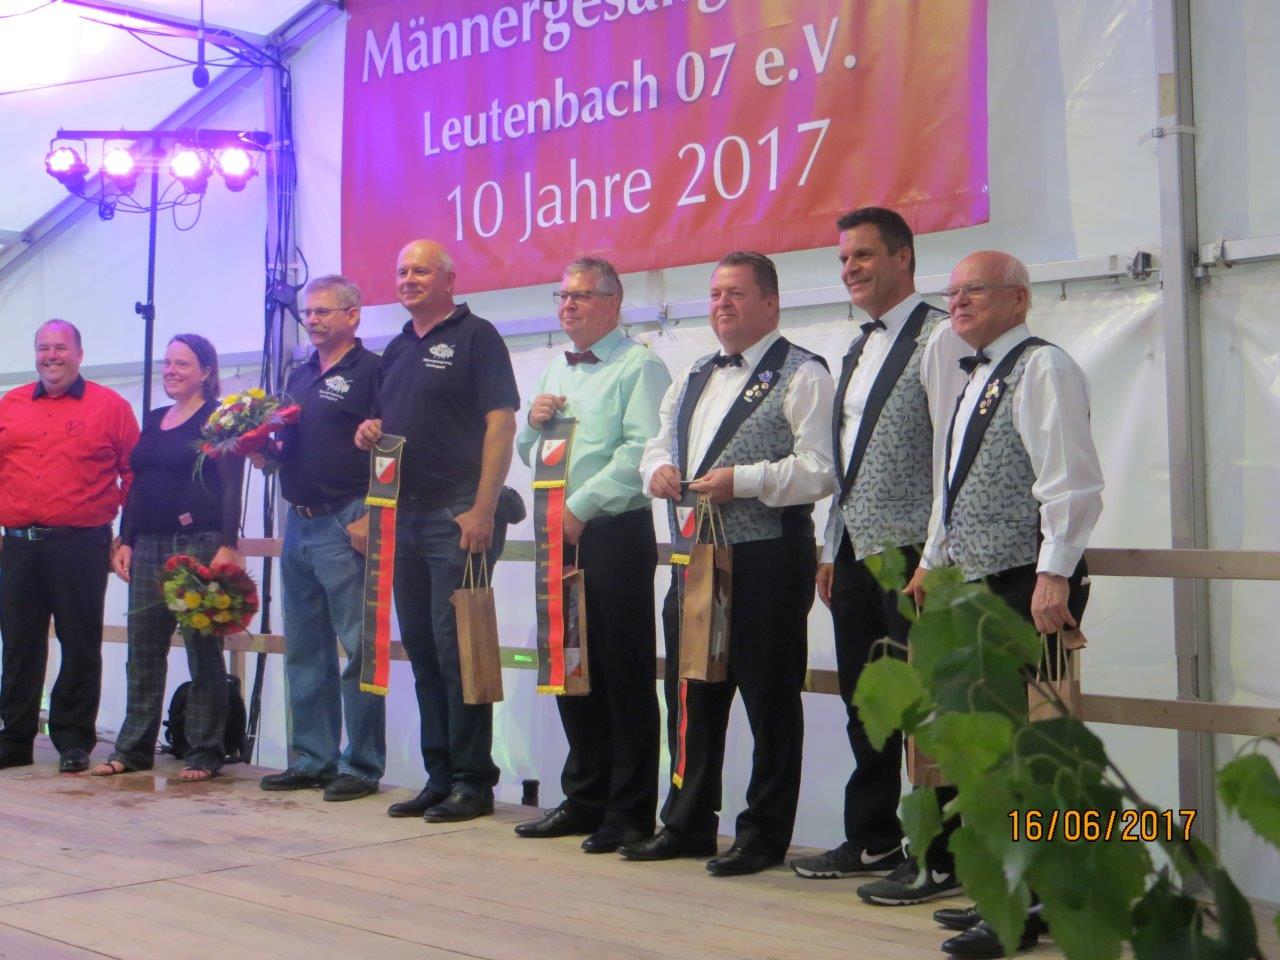 Jubiläumsfest 10 Jahre Männergesangsverein Leutenbach 07